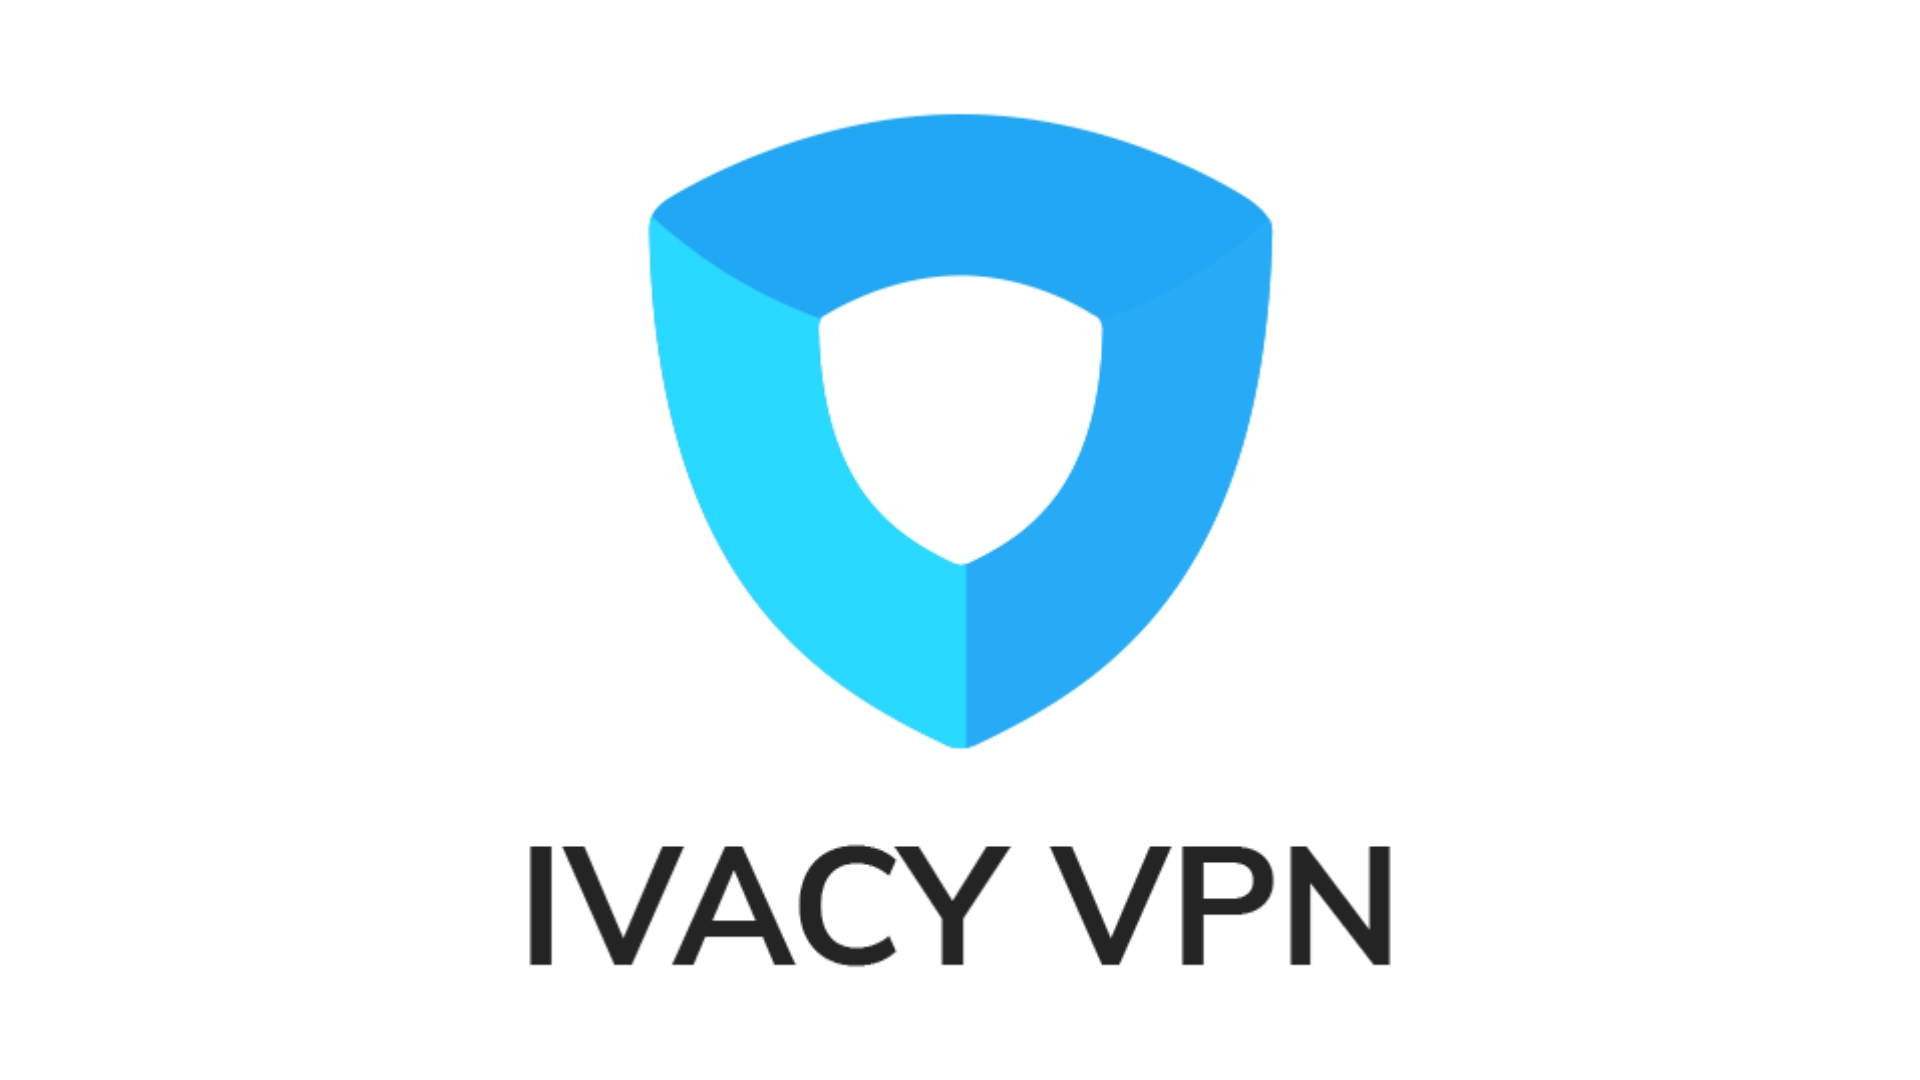 Pokémonที่ดีที่สุด GO VPN: IVACY VPN รูปภาพแสดงโลโก้ของ บริษัท